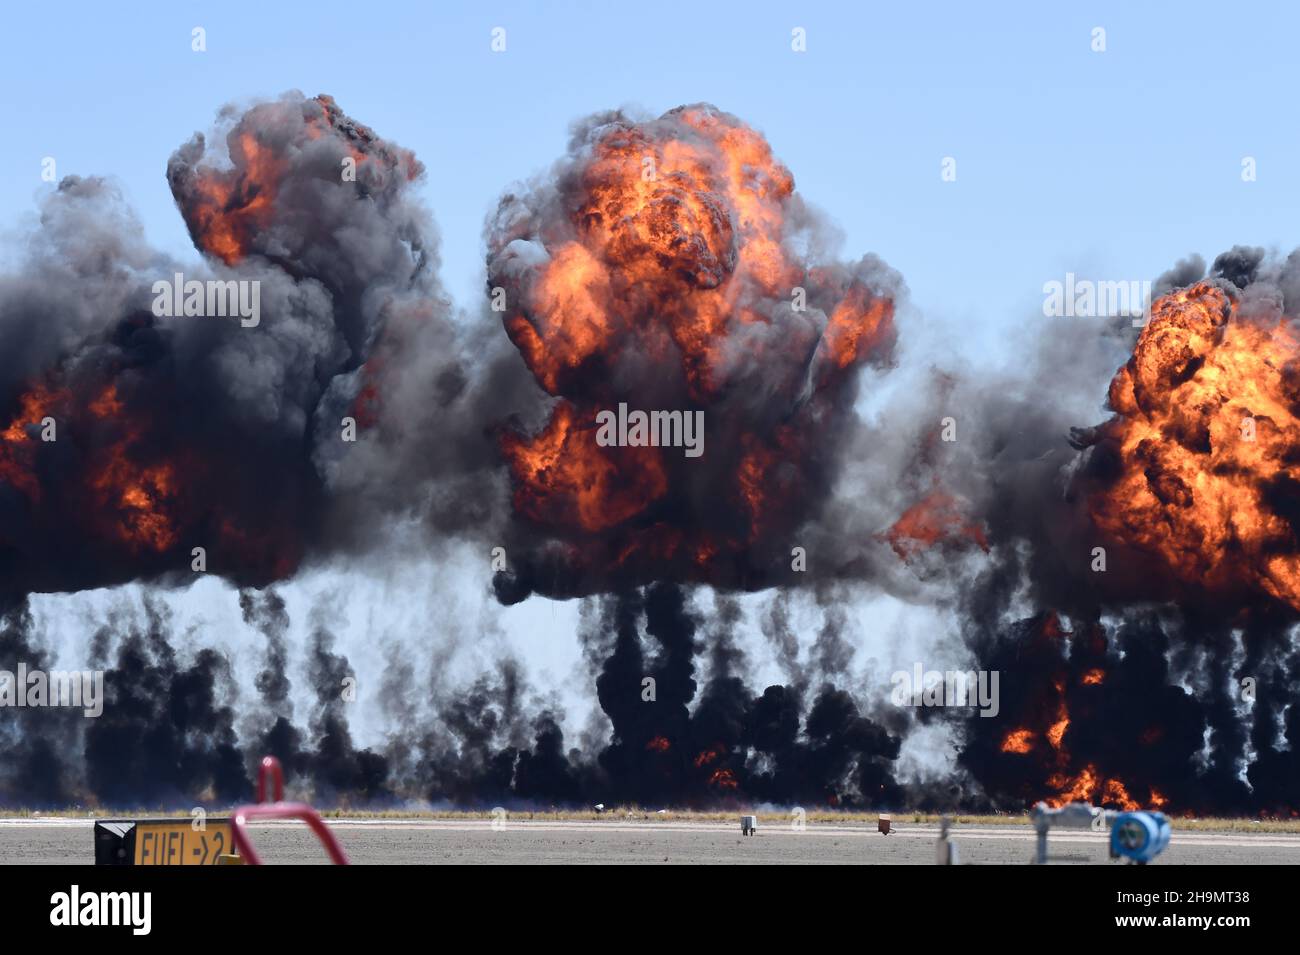 La fumée et la flamme provenant de l'ordnance simulée s'enflamme près de la piste lors de la démonstration MAGTF au MCAS Miramar Airshow Banque D'Images